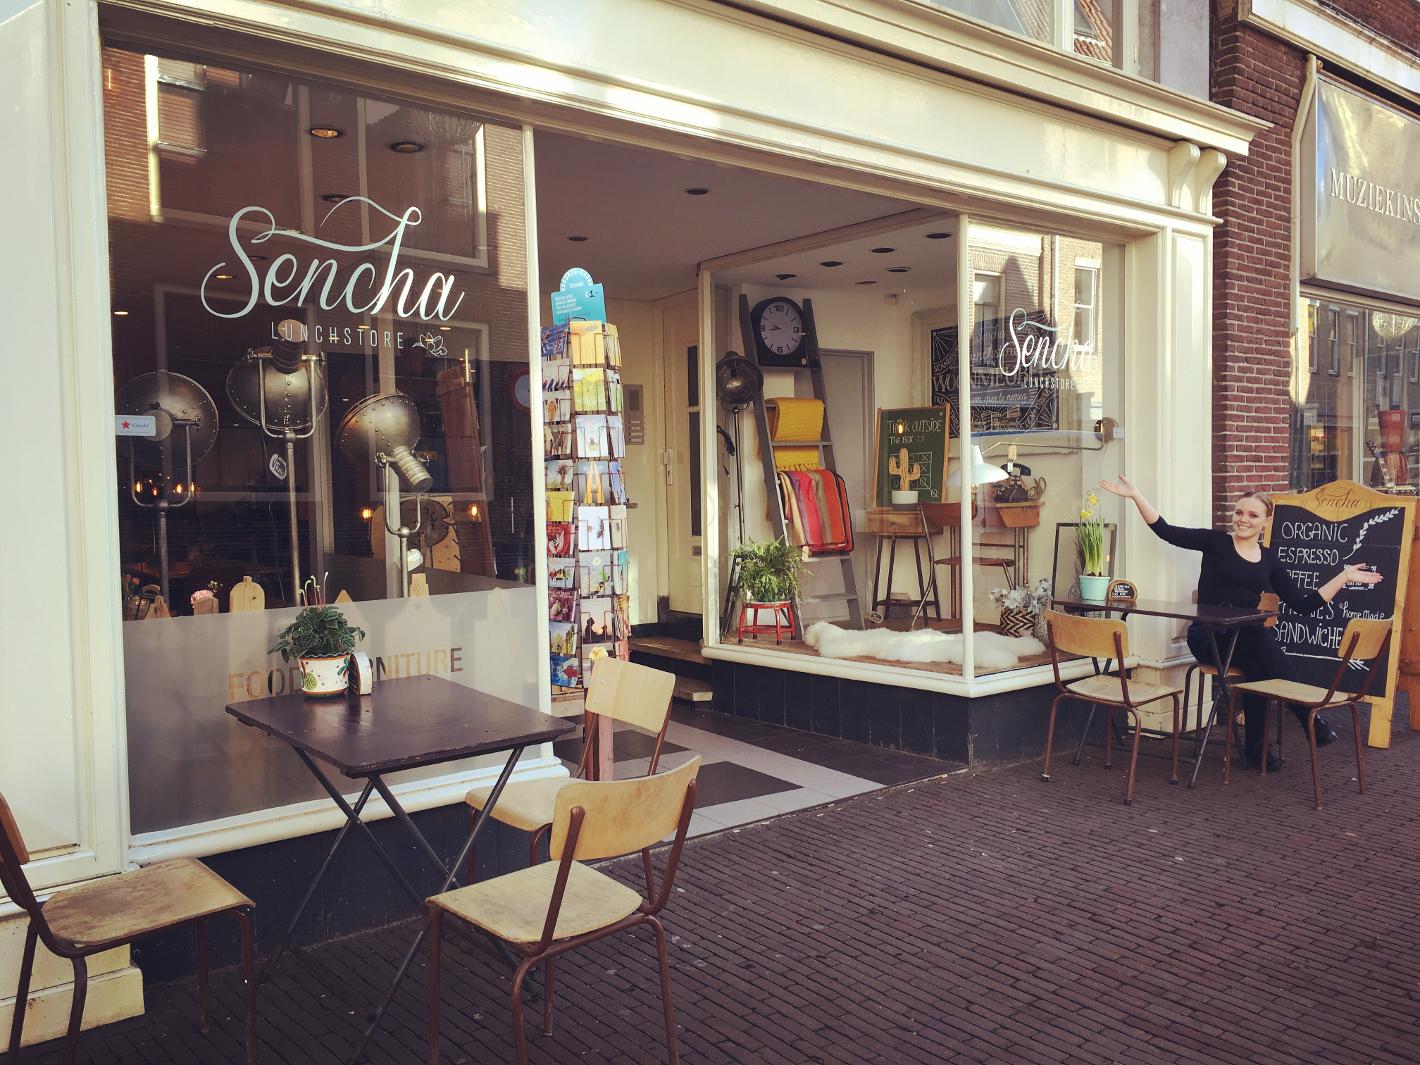 Foto Sencha Lunchstore in Alkmaar, Eten & drinken, Koffie, thee & gebak, Lunchen - #2